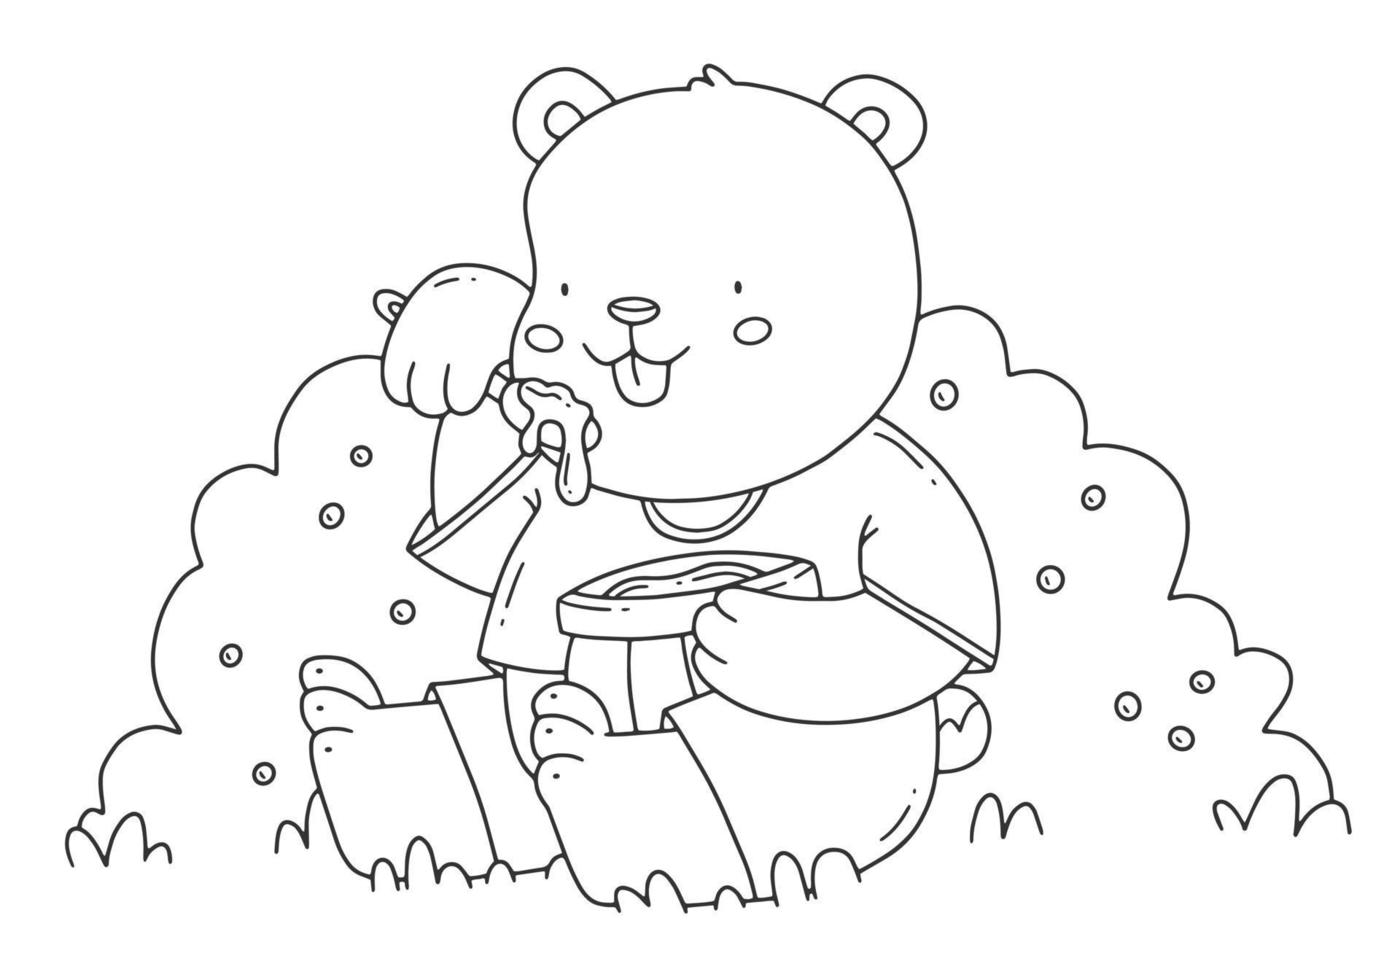 barns målarbok med en björn som äter honung som sitter på gräset. söt målarbok med ett djur. vektor linjär svartvit illustration.